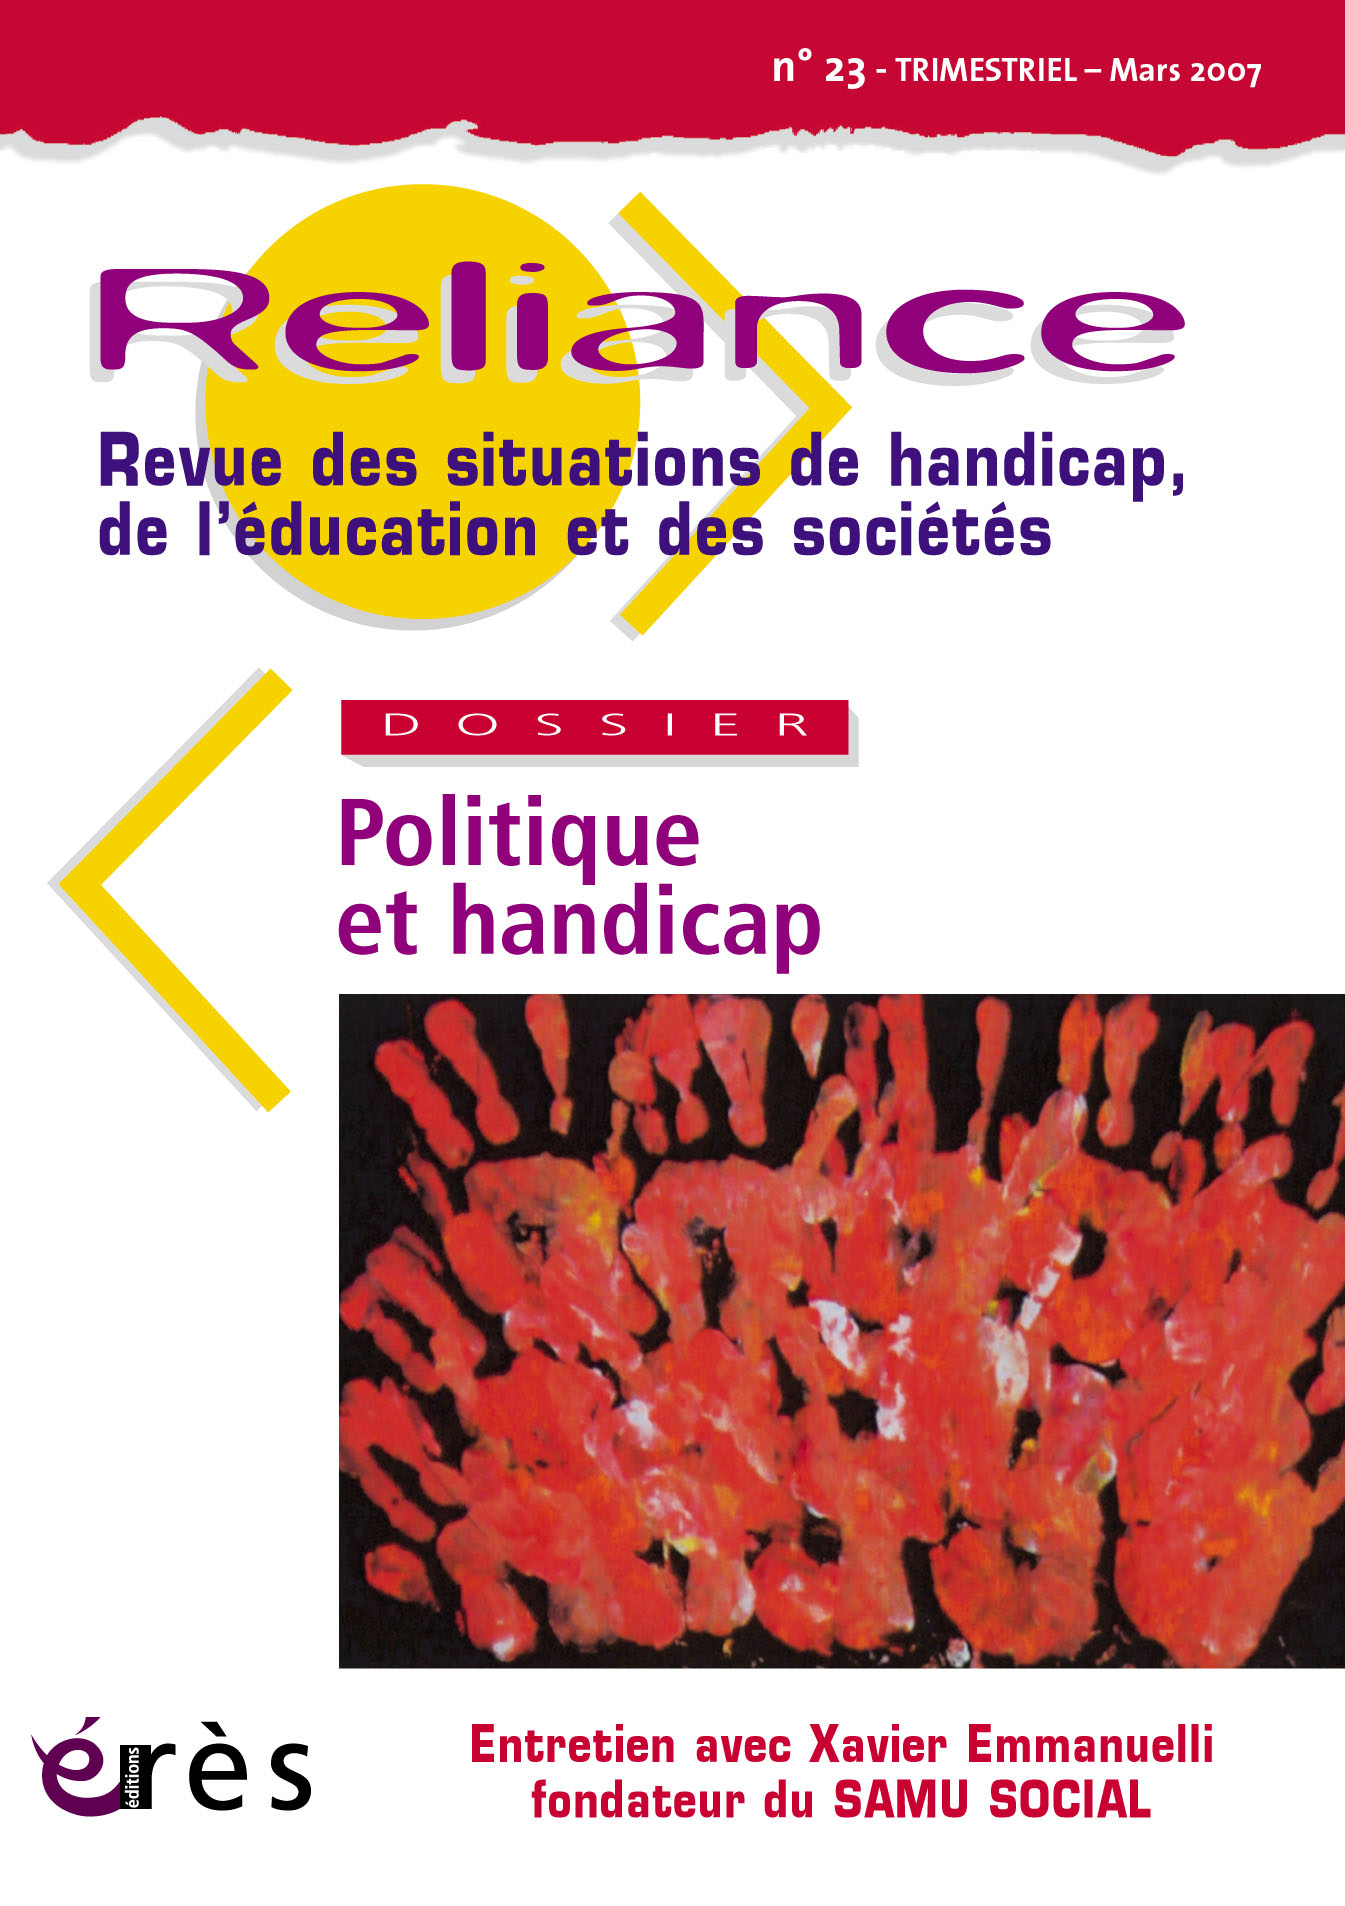  Reliance  Revue des situations de handicap, de l’éducation et des sociétés  Dossier : Politique et handicap